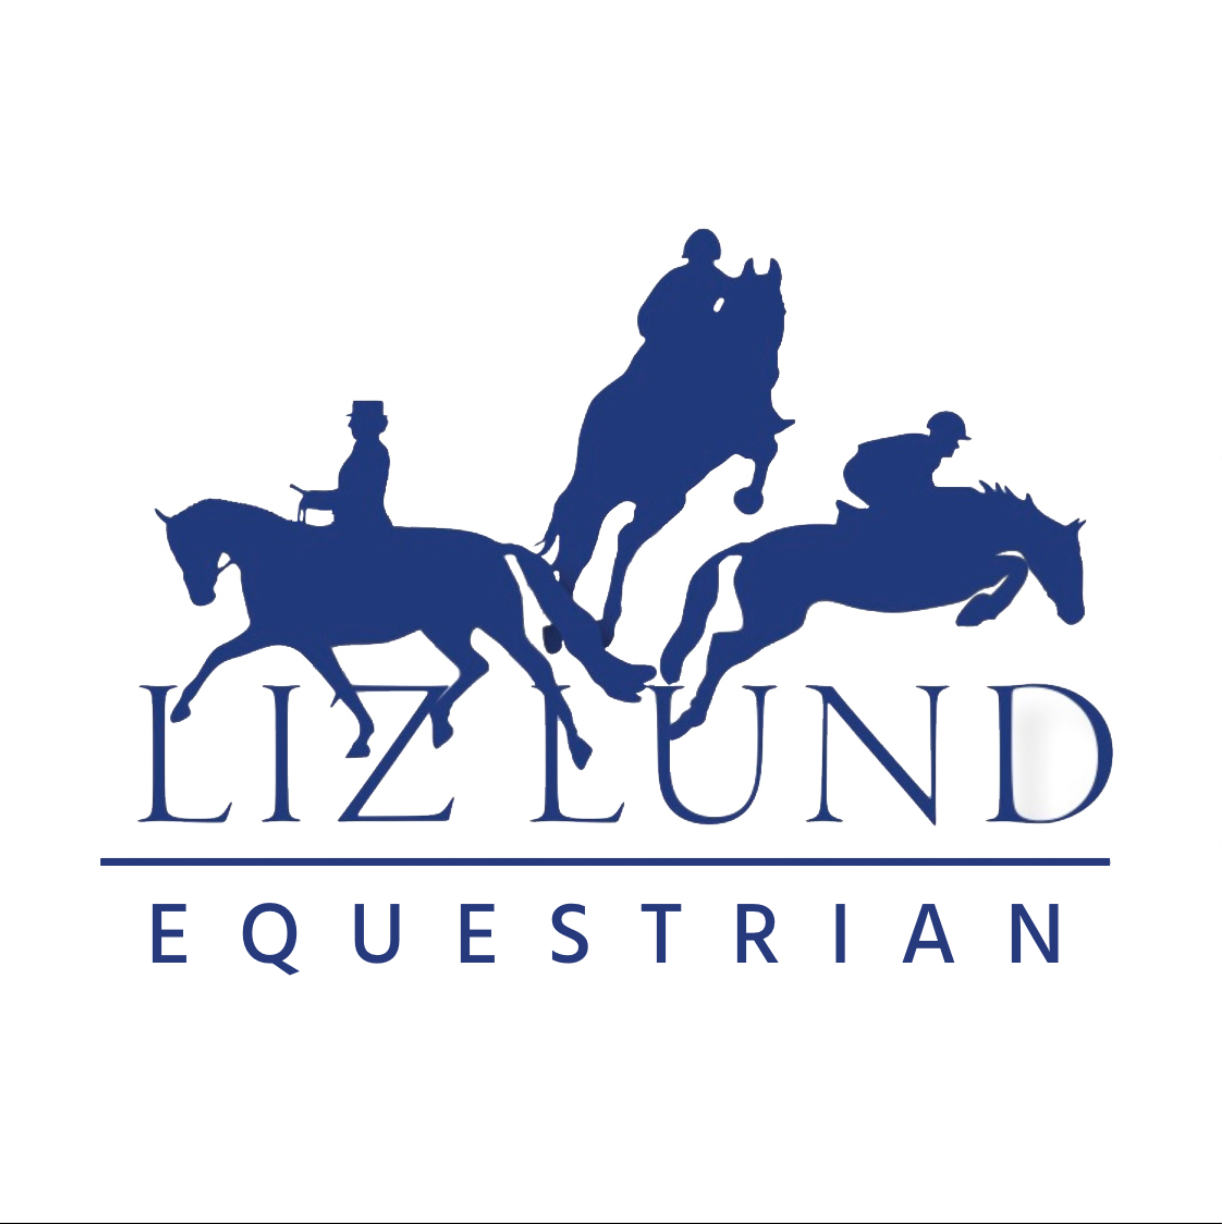 Liz Lund Equestrian